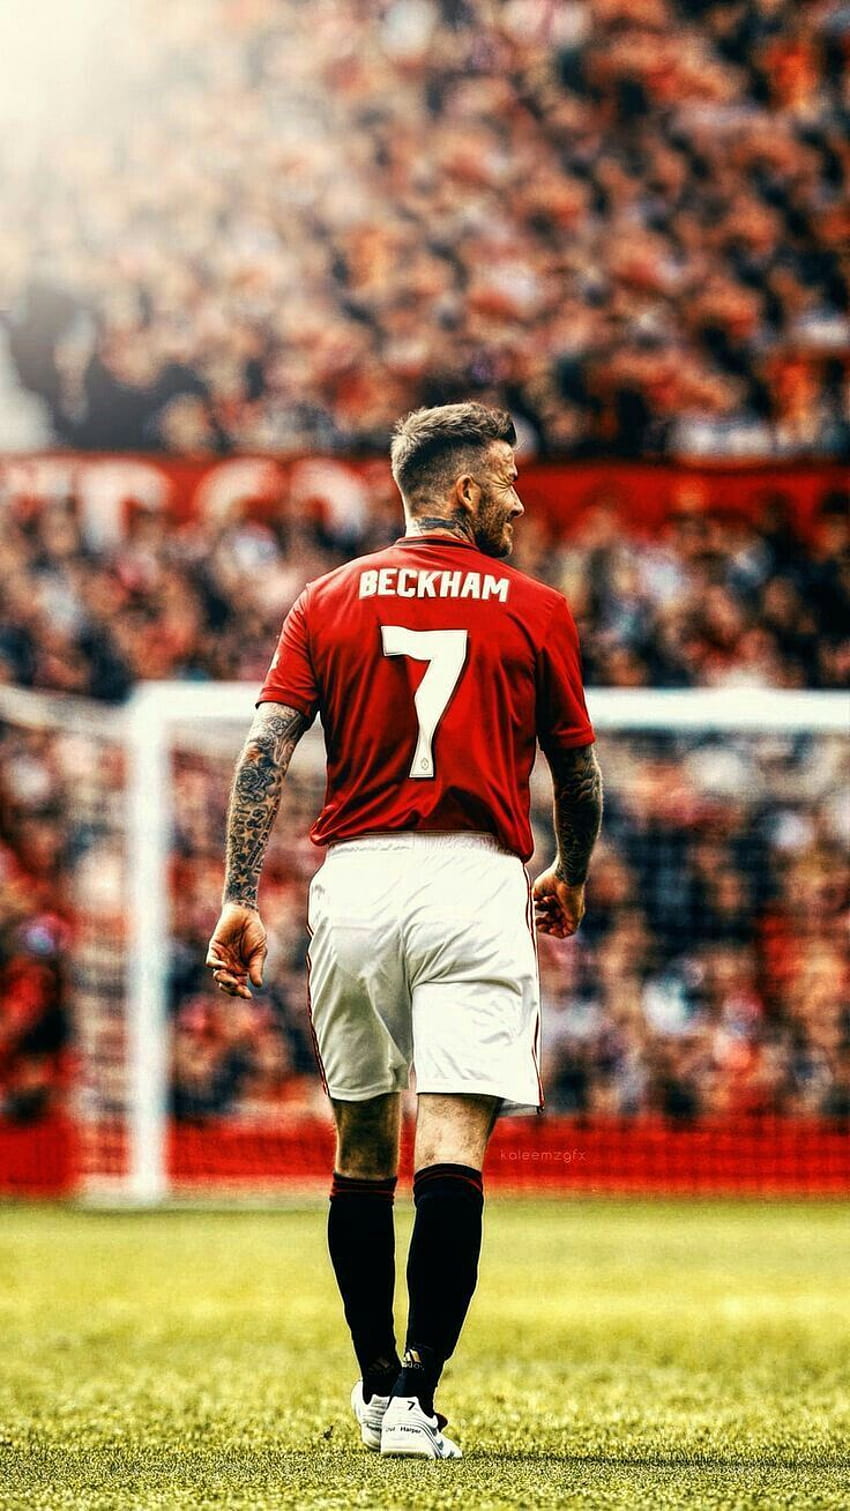 David Beckham từng là một trong những cầu thủ được yêu thích nhất của Manchester United. Hãy tải ngay ảnh nền điện thoại HD của anh ấy đang chơi bóng tại đội này để giữ lại những kỷ niệm đẹp về một thời kỳ huy hoàng của Manchester United.